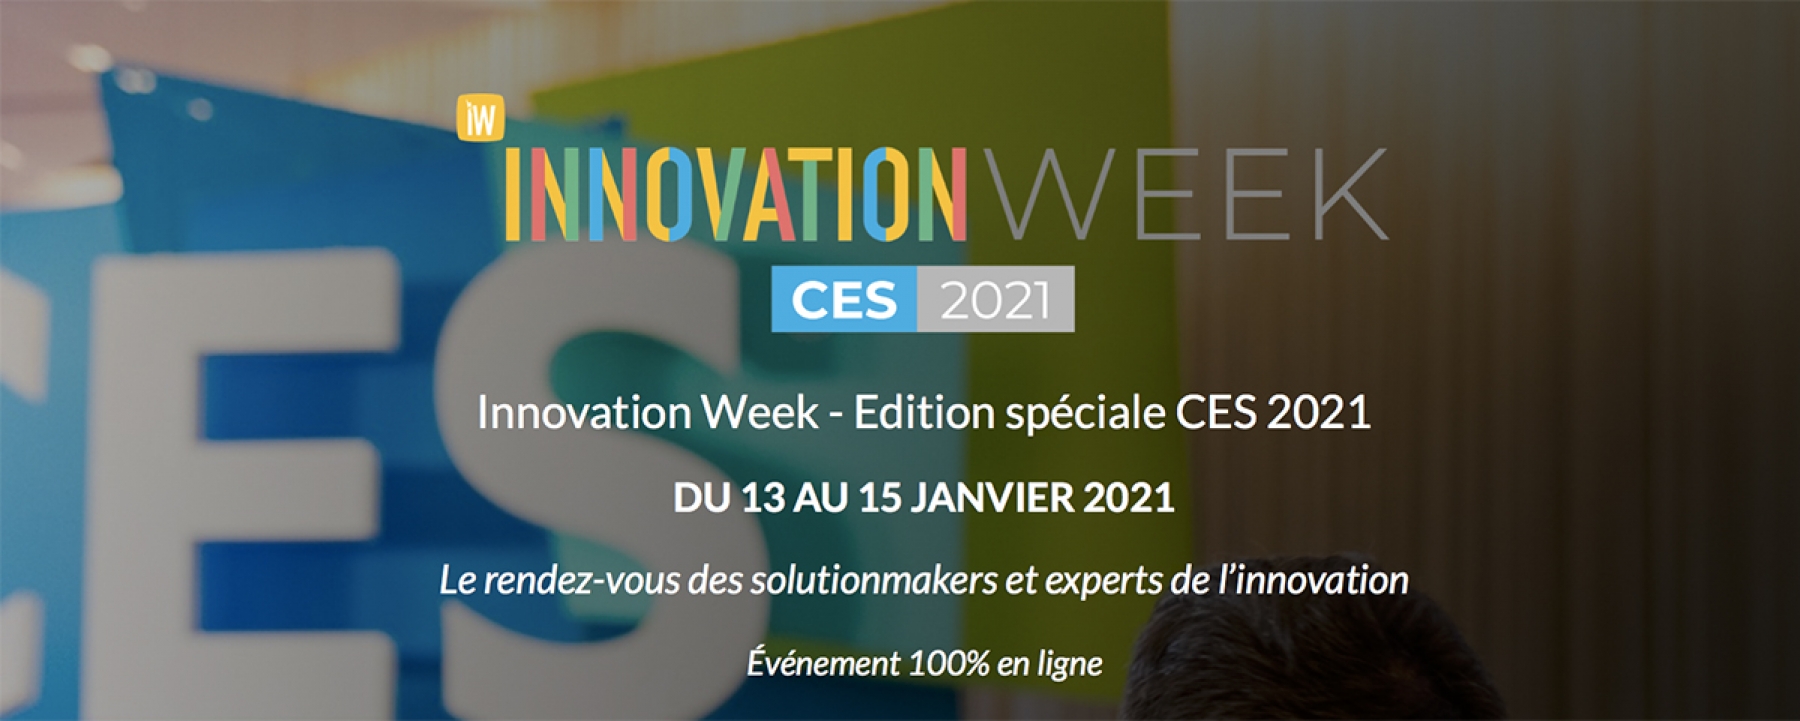 Innovation Week - Edition spéciale CES 2021, un événement organisé par le Hub Institute du 13 au 15 janvier 2021